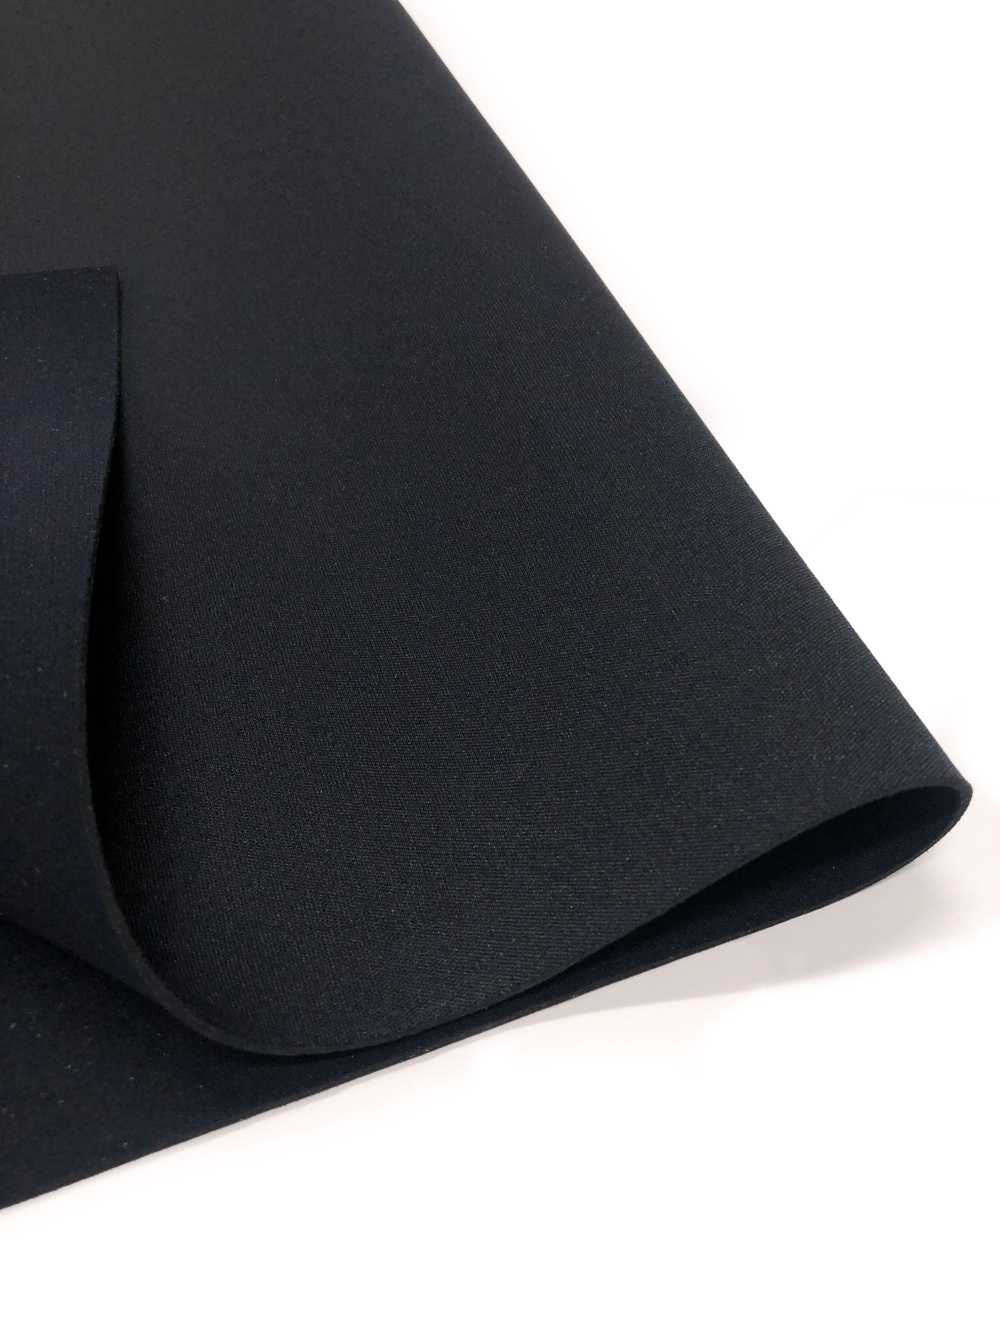 31188 HM AL Noir/PS Noir 95 × 170 Cm[Fabrication De Textile] Tortue